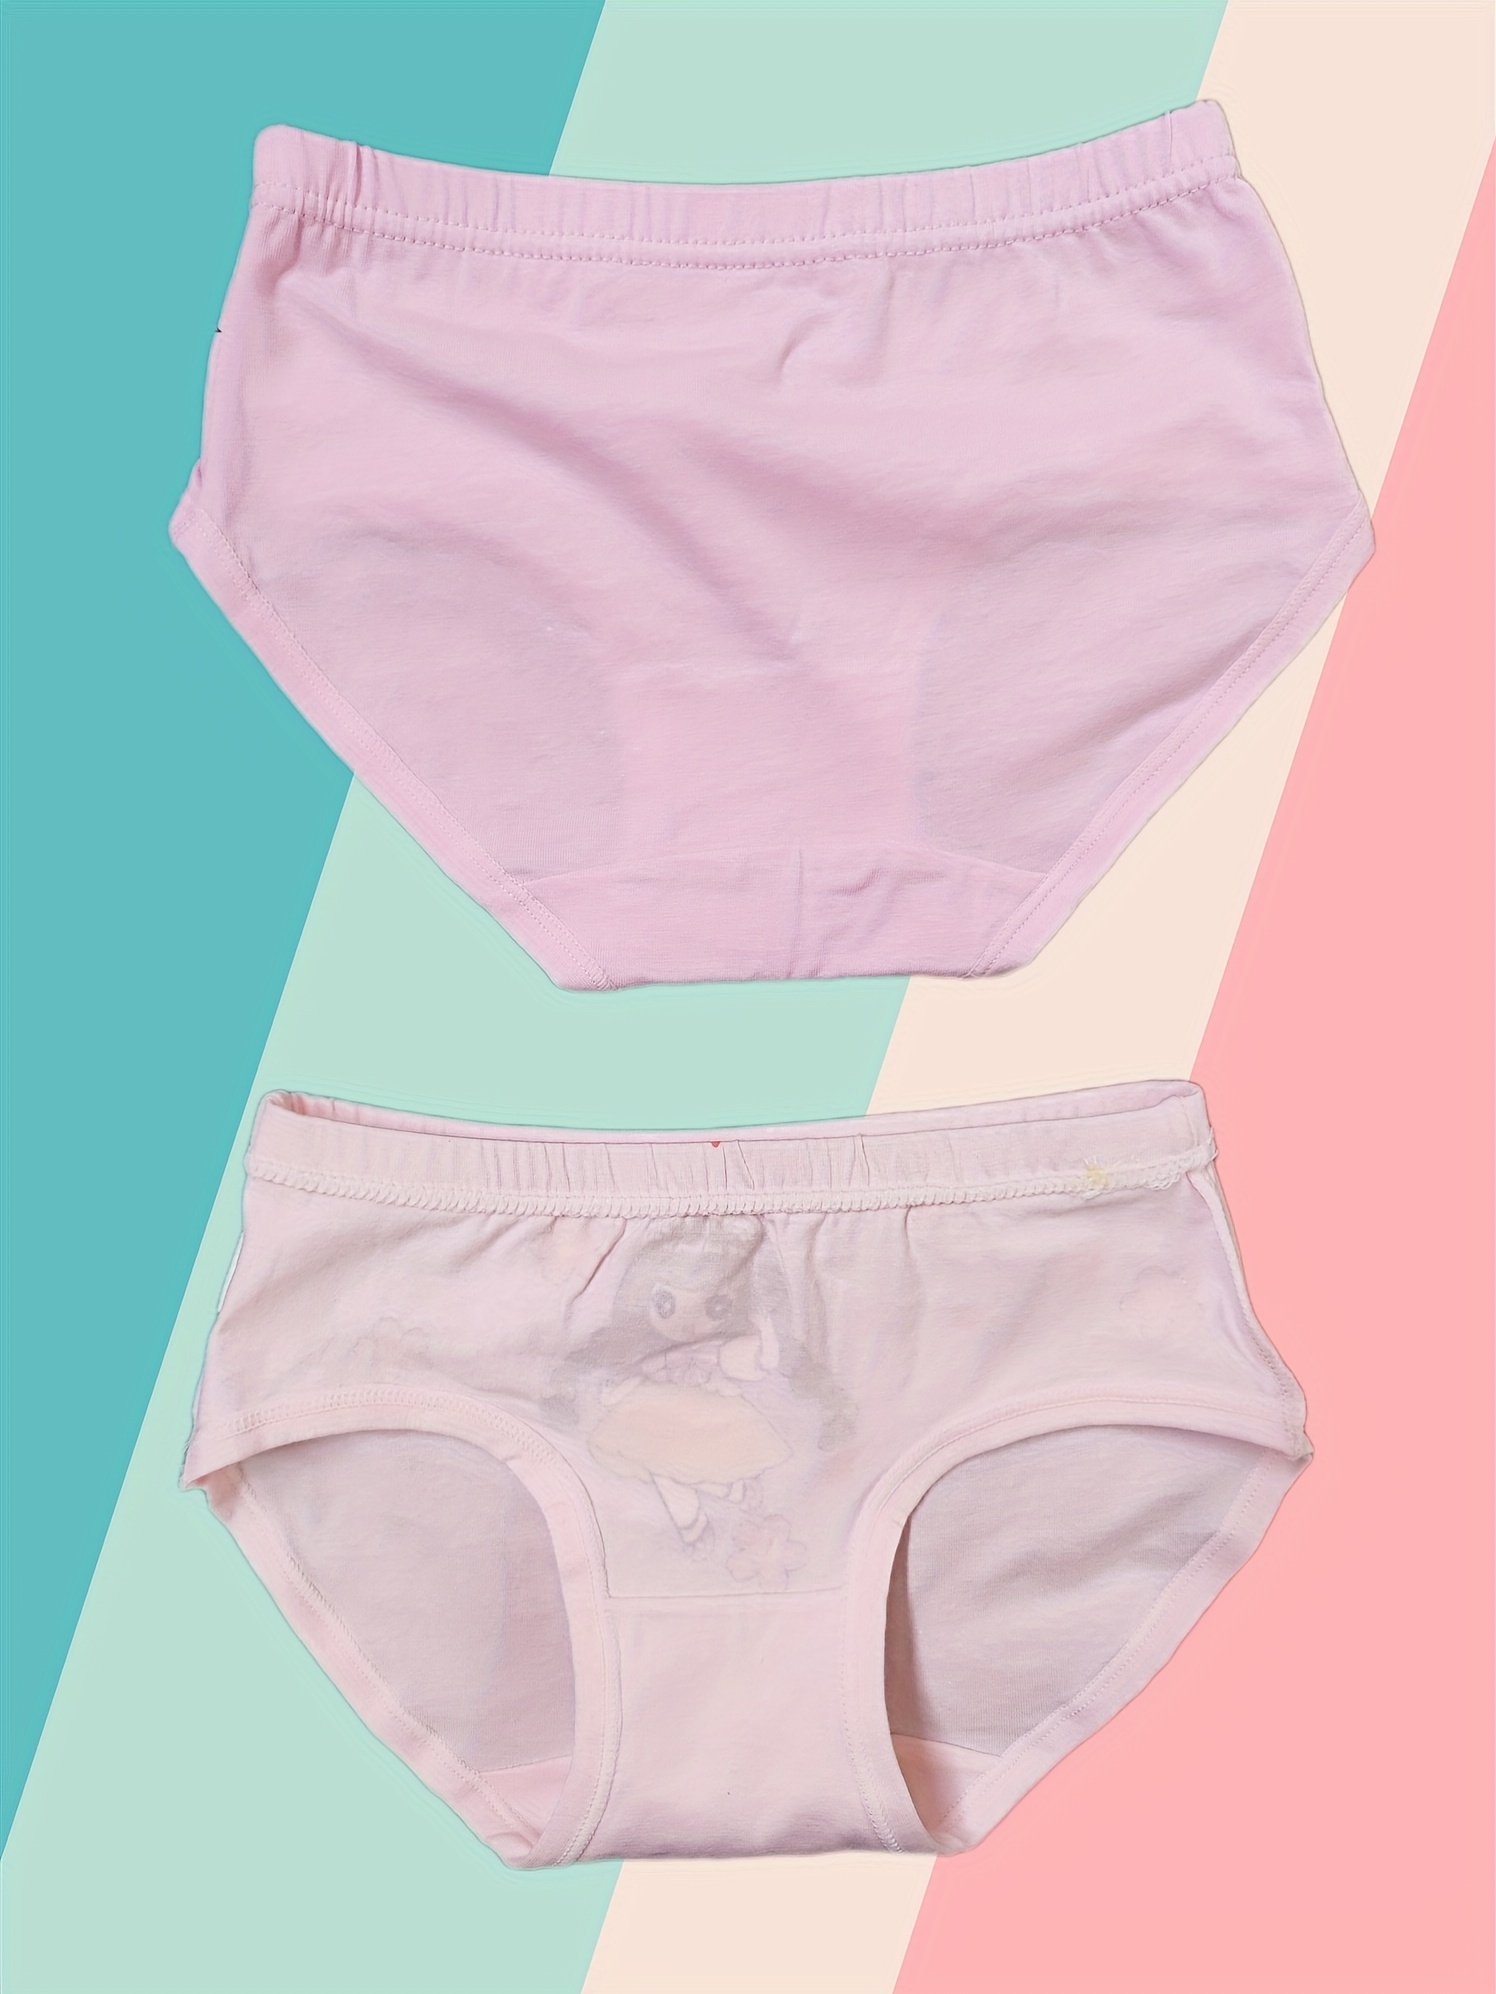 6 12 Pack Girls Briefs, 100% Cotton Knicker Comfort Fit Underwear